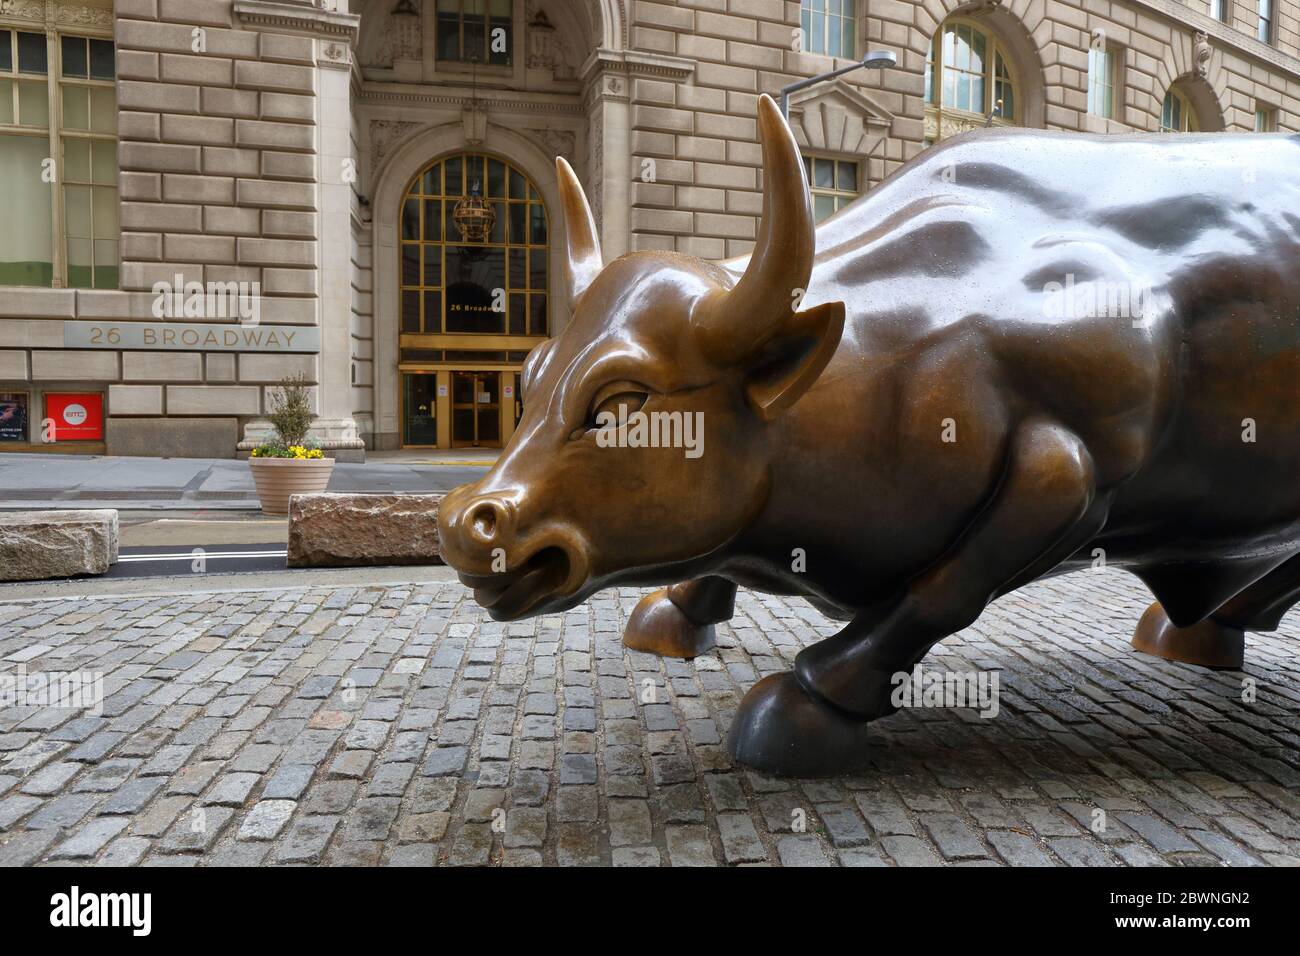 Chargement Bull par Arturo Di Modica, en face du 26 Broadway, New York.Une sculpture en bronze qui représente Wall Street. Pas de gens Banque D'Images